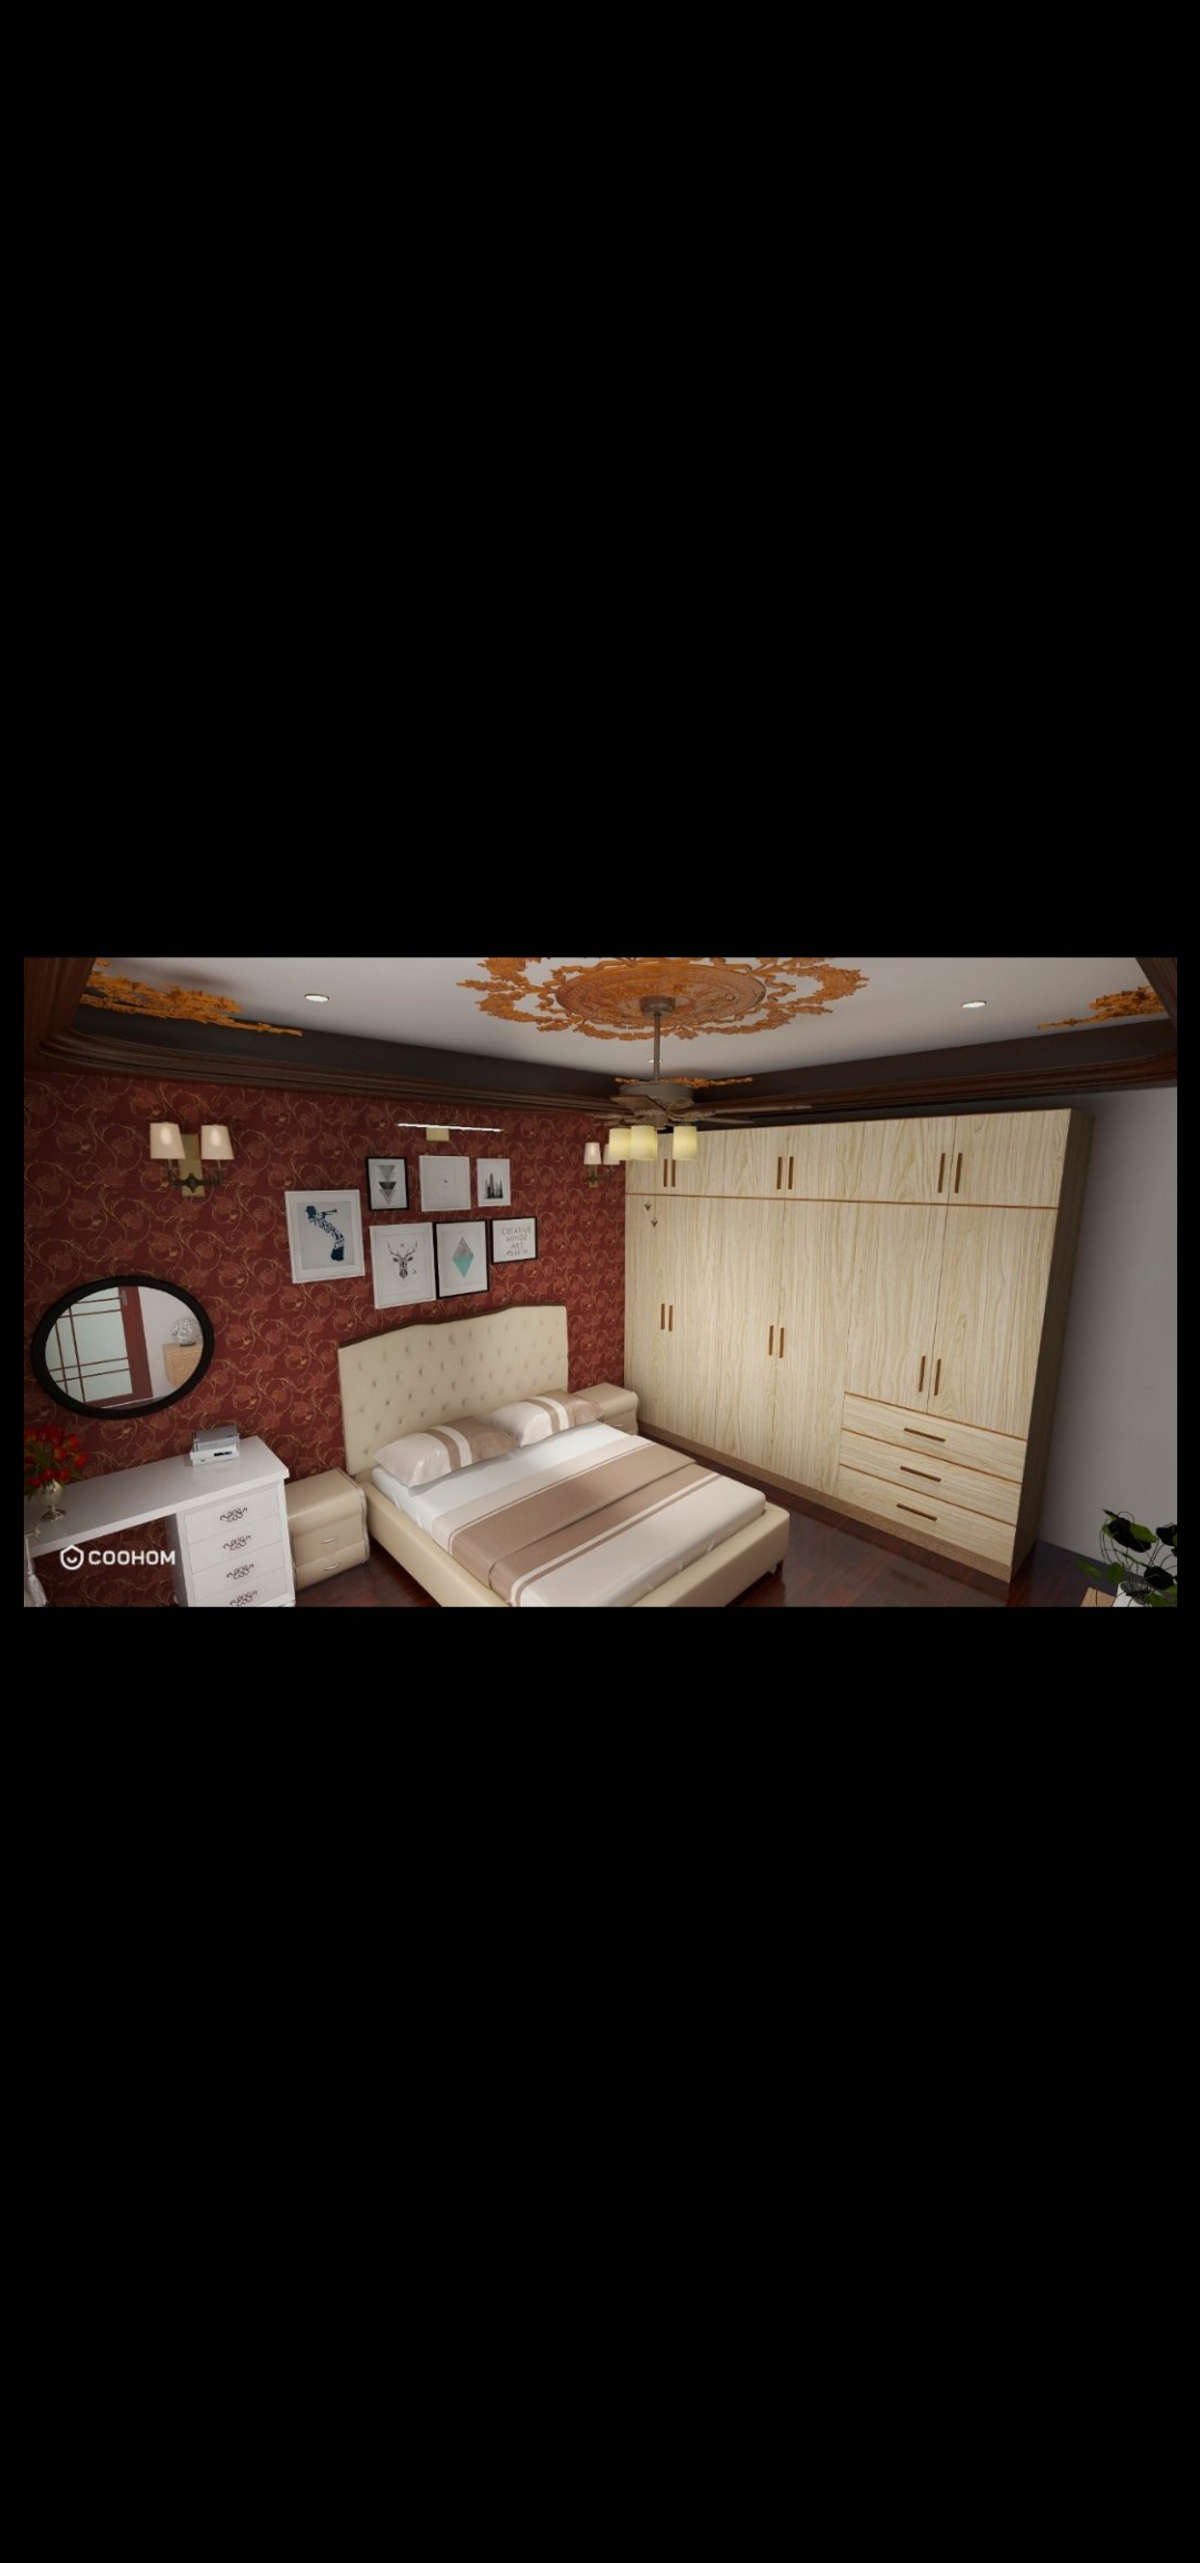 Ceiling, Furniture, Storage, Wall, Bedroom Designs by Civil Engineer Kuldeep Kumar, Delhi | Kolo